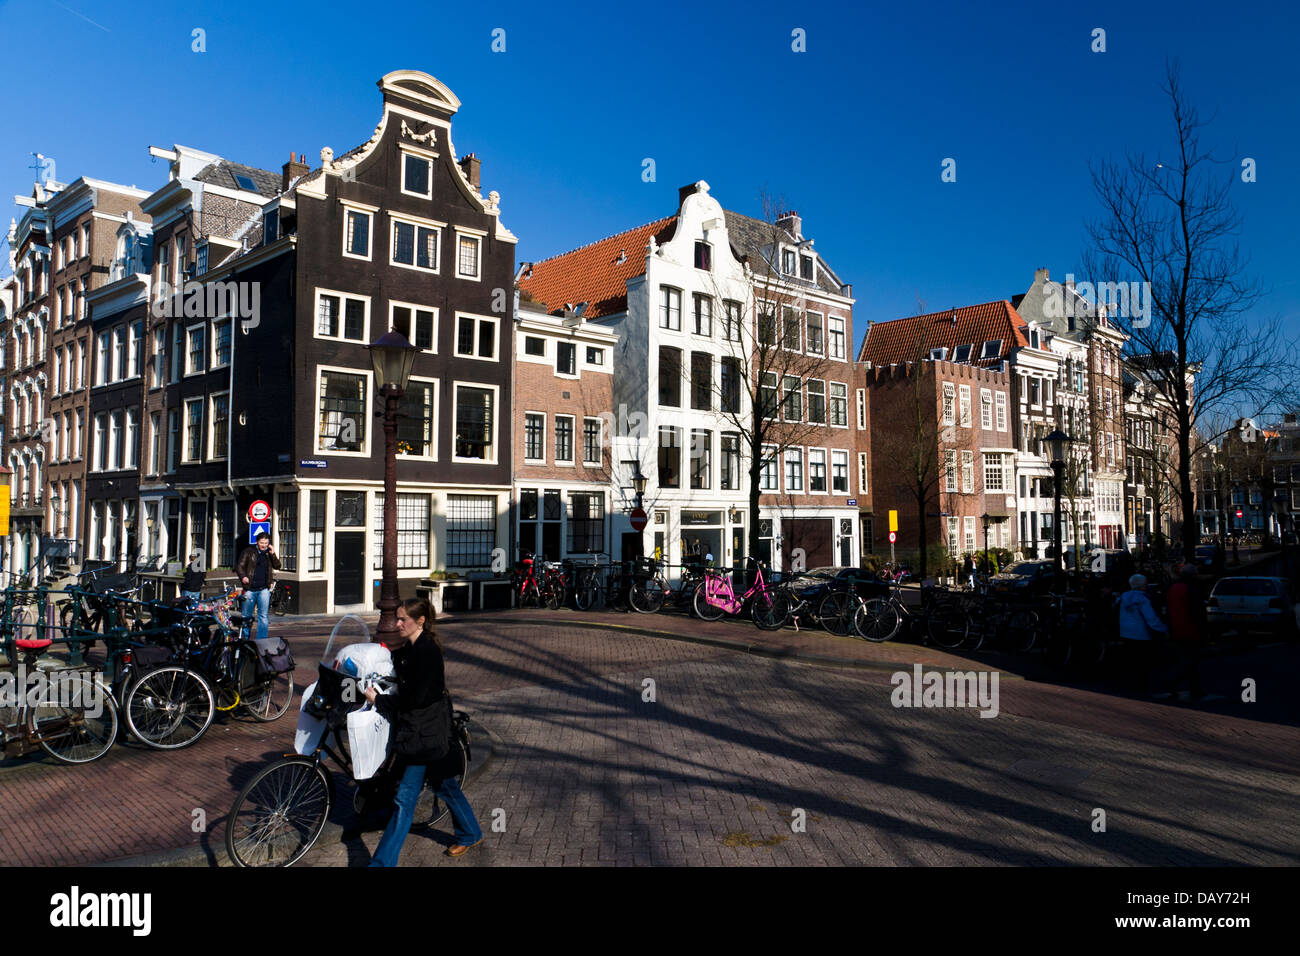 Le centre-ville historique d'Amsterdam, Herengracht et Blauwburgwal Coin des canaux. Amsterdam, Pays-Bas. Banque D'Images